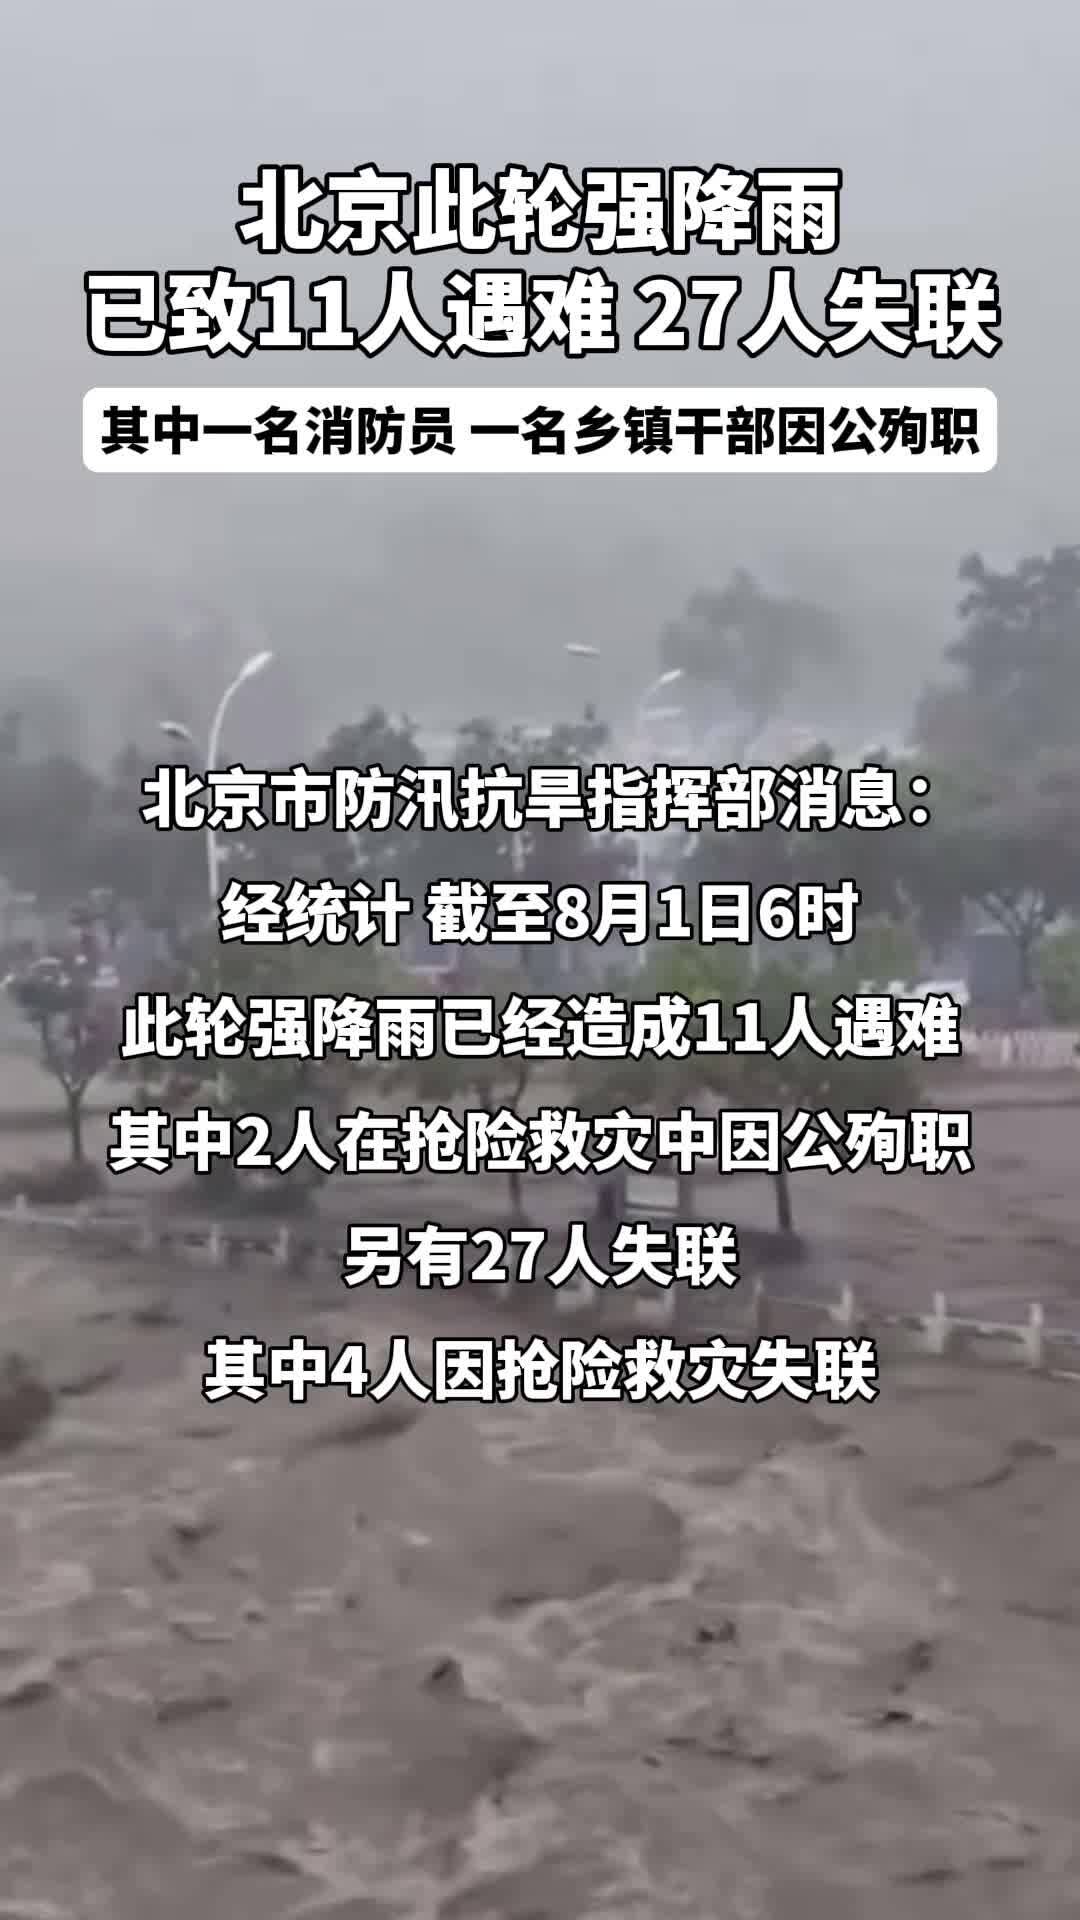 北京此轮强降雨已致11人遇难 27人失联 其中一名消防员 一名乡镇干部因公殉职